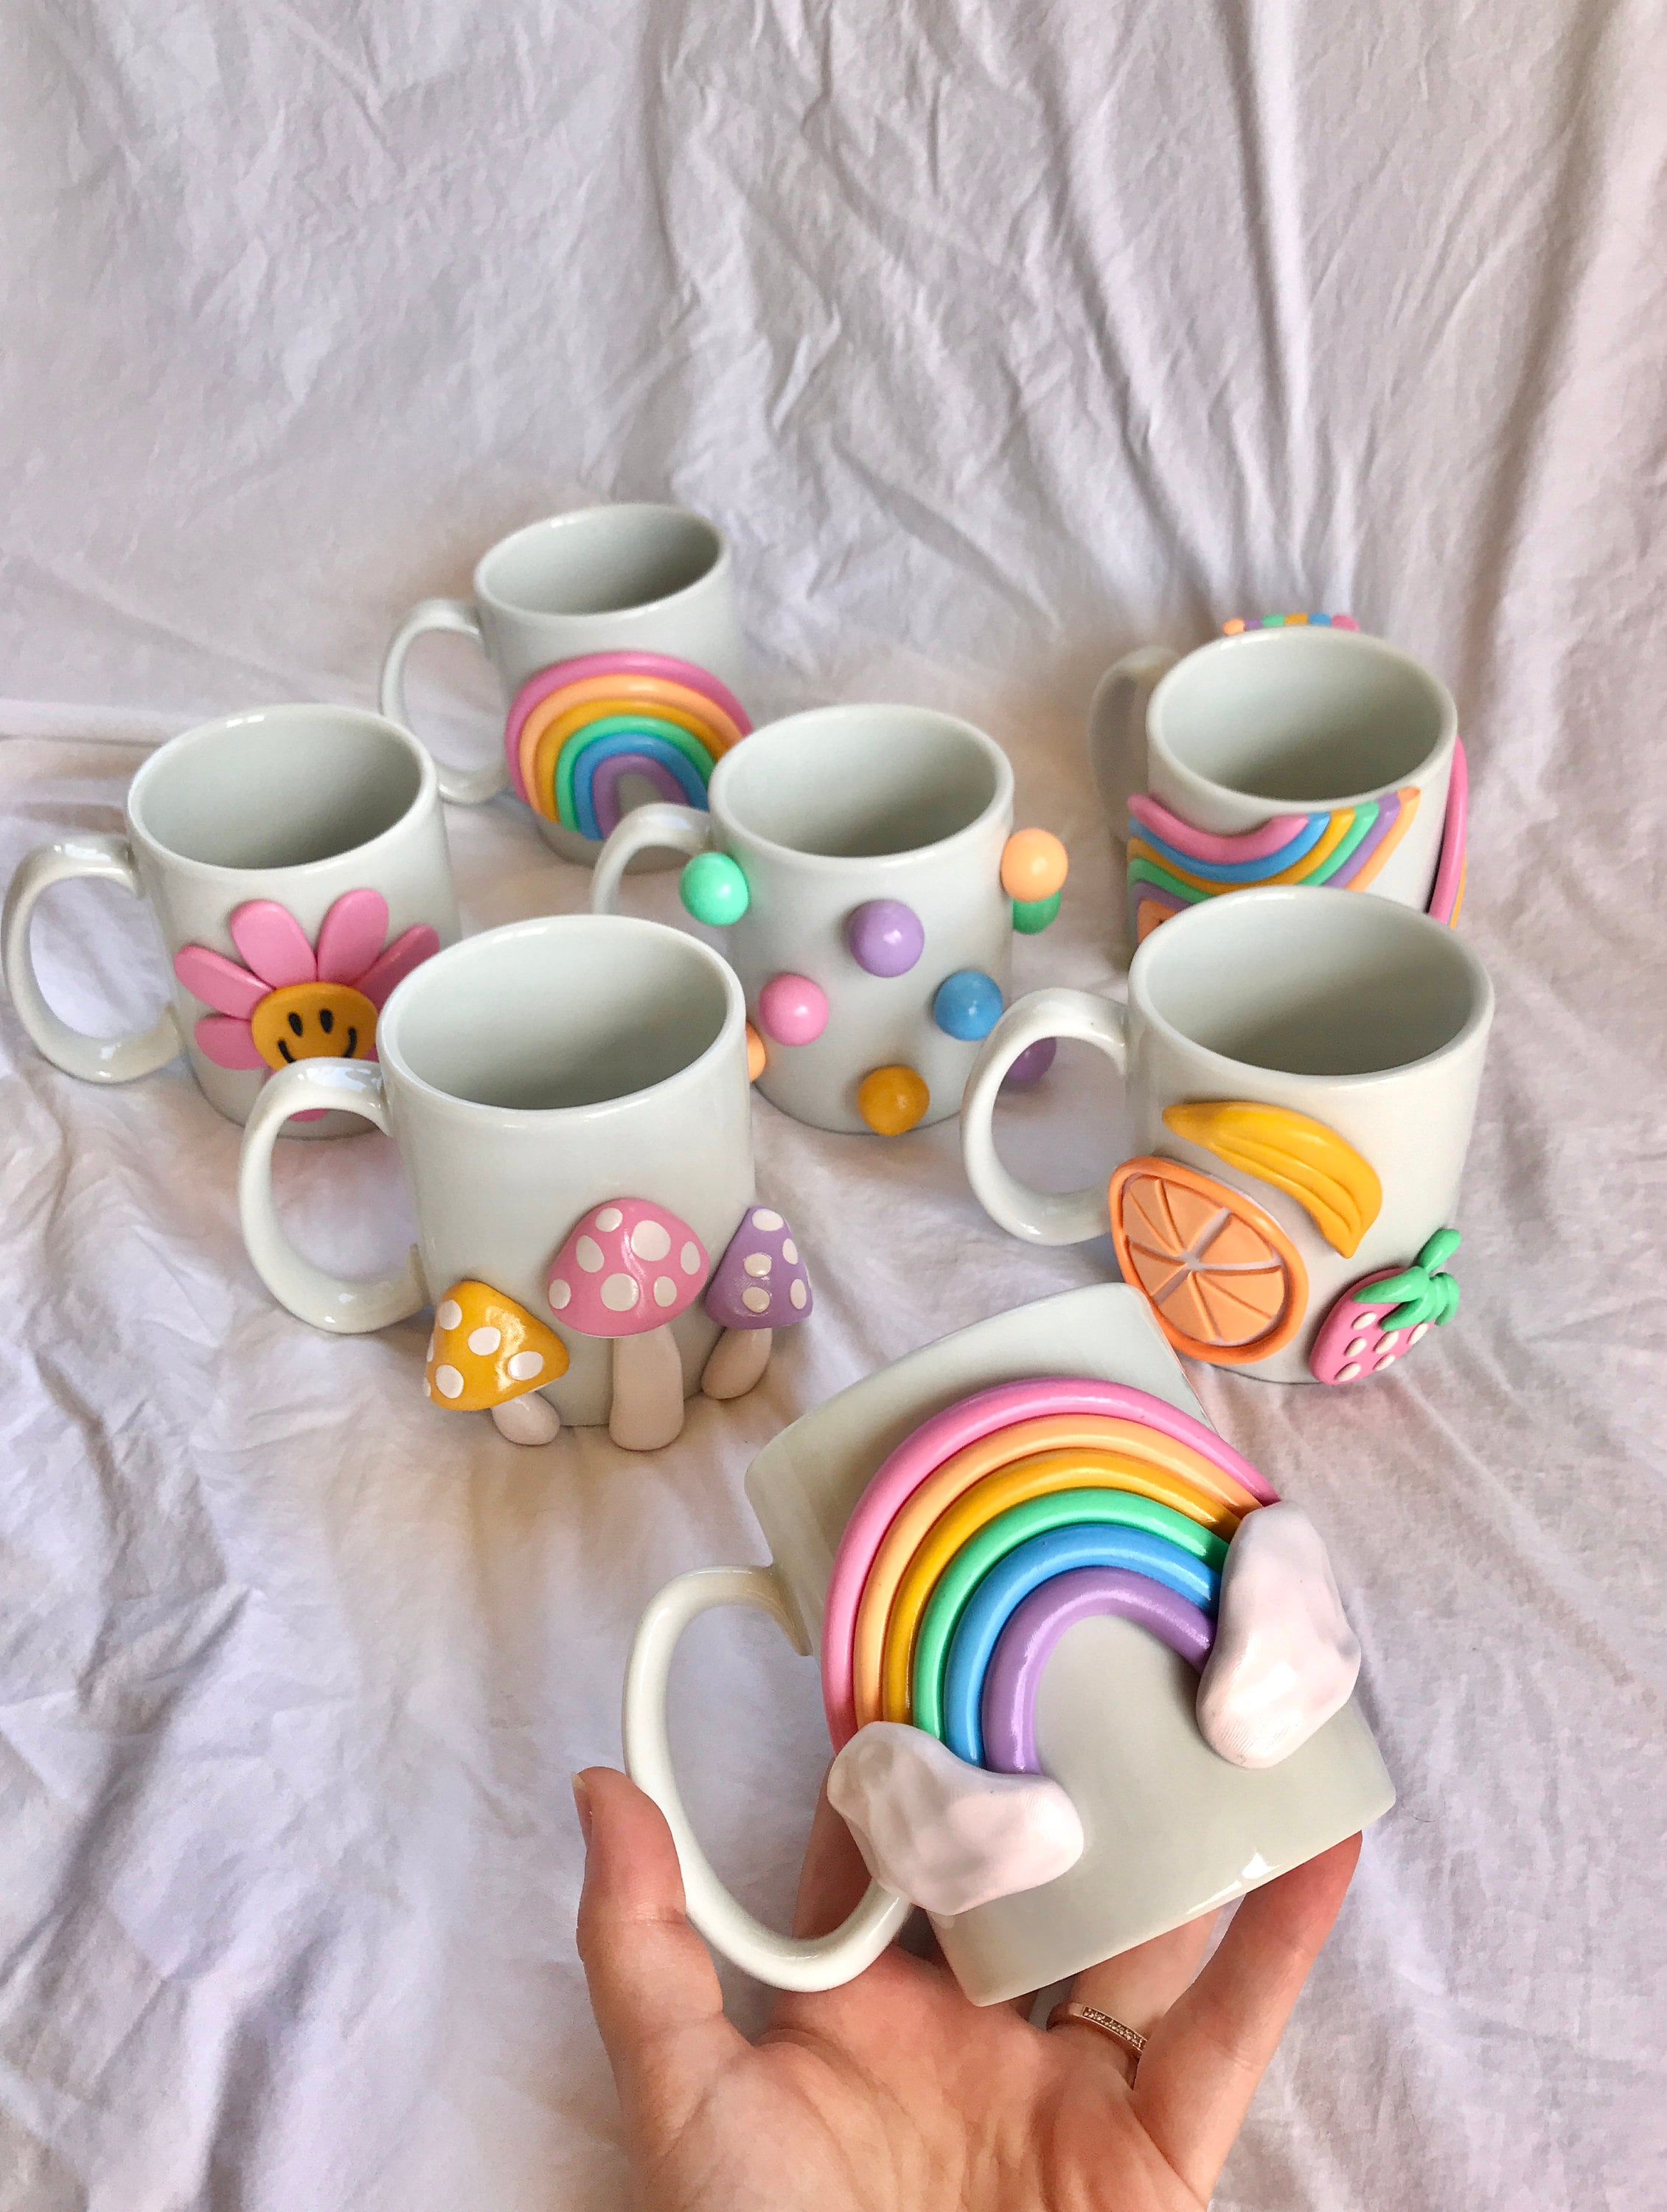 Taza de café 3d colorida / Taza de cerámica hecha a mano / Taza de